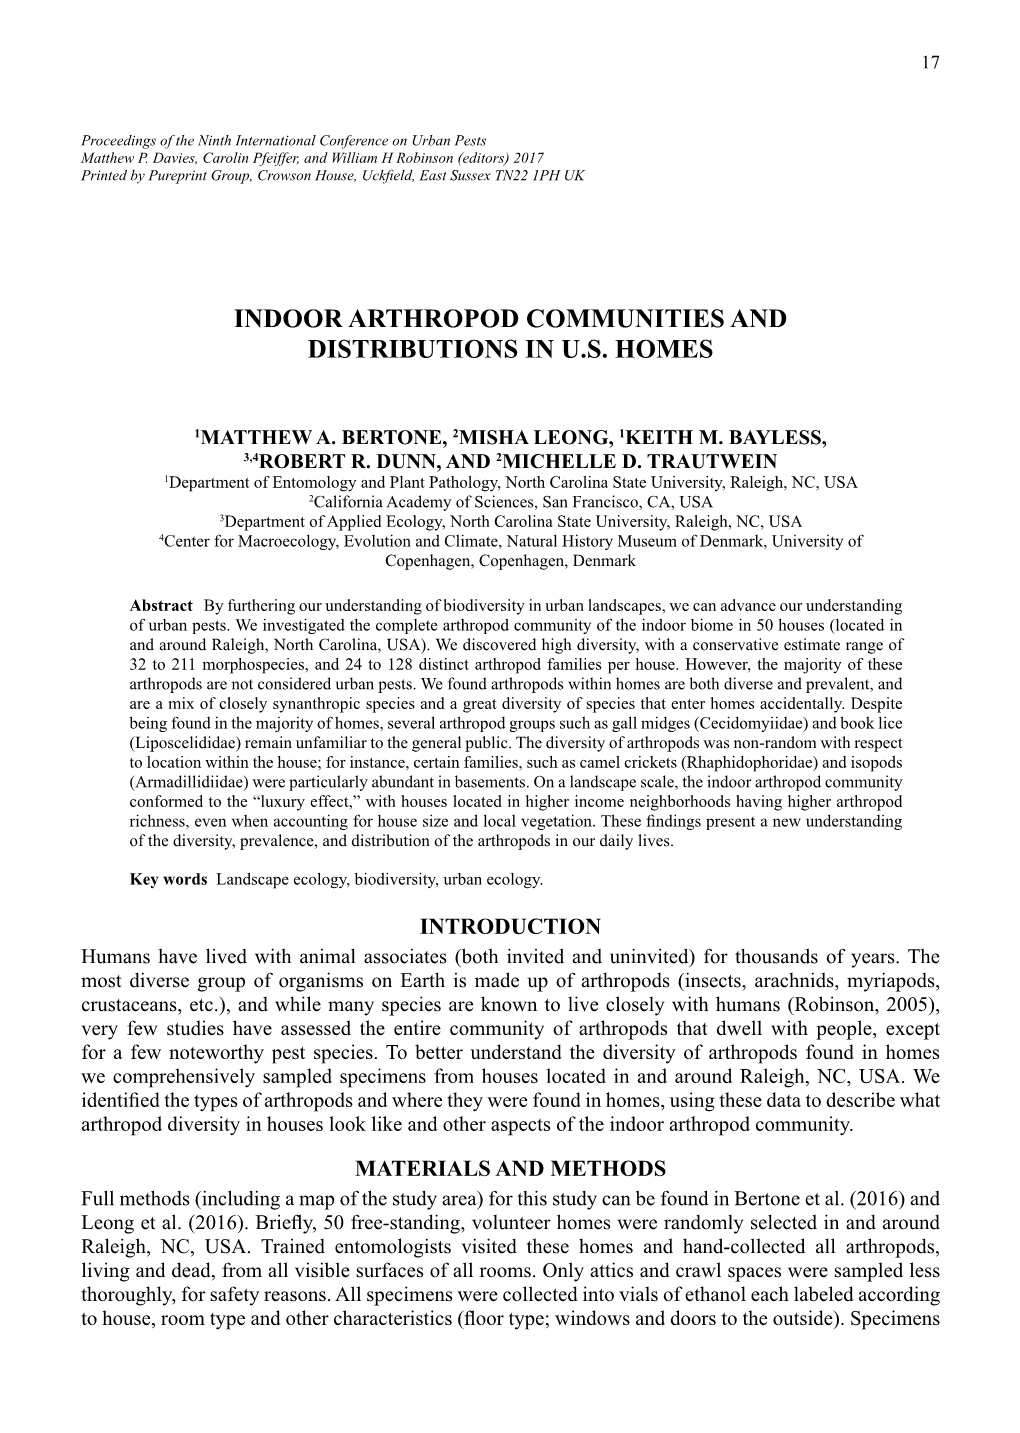 Indoor Arthropod Communities and Distributions in U.S